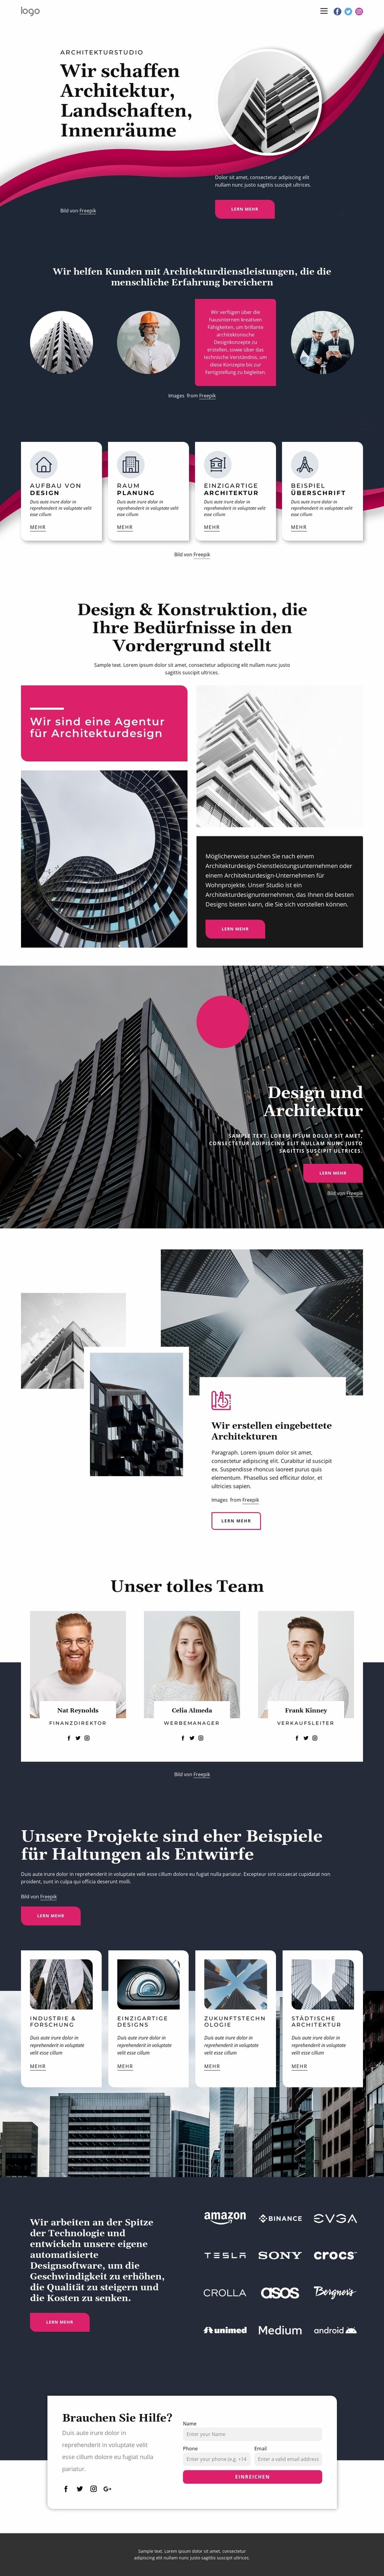 Wir schaffen großartige Architektur Joomla Vorlage